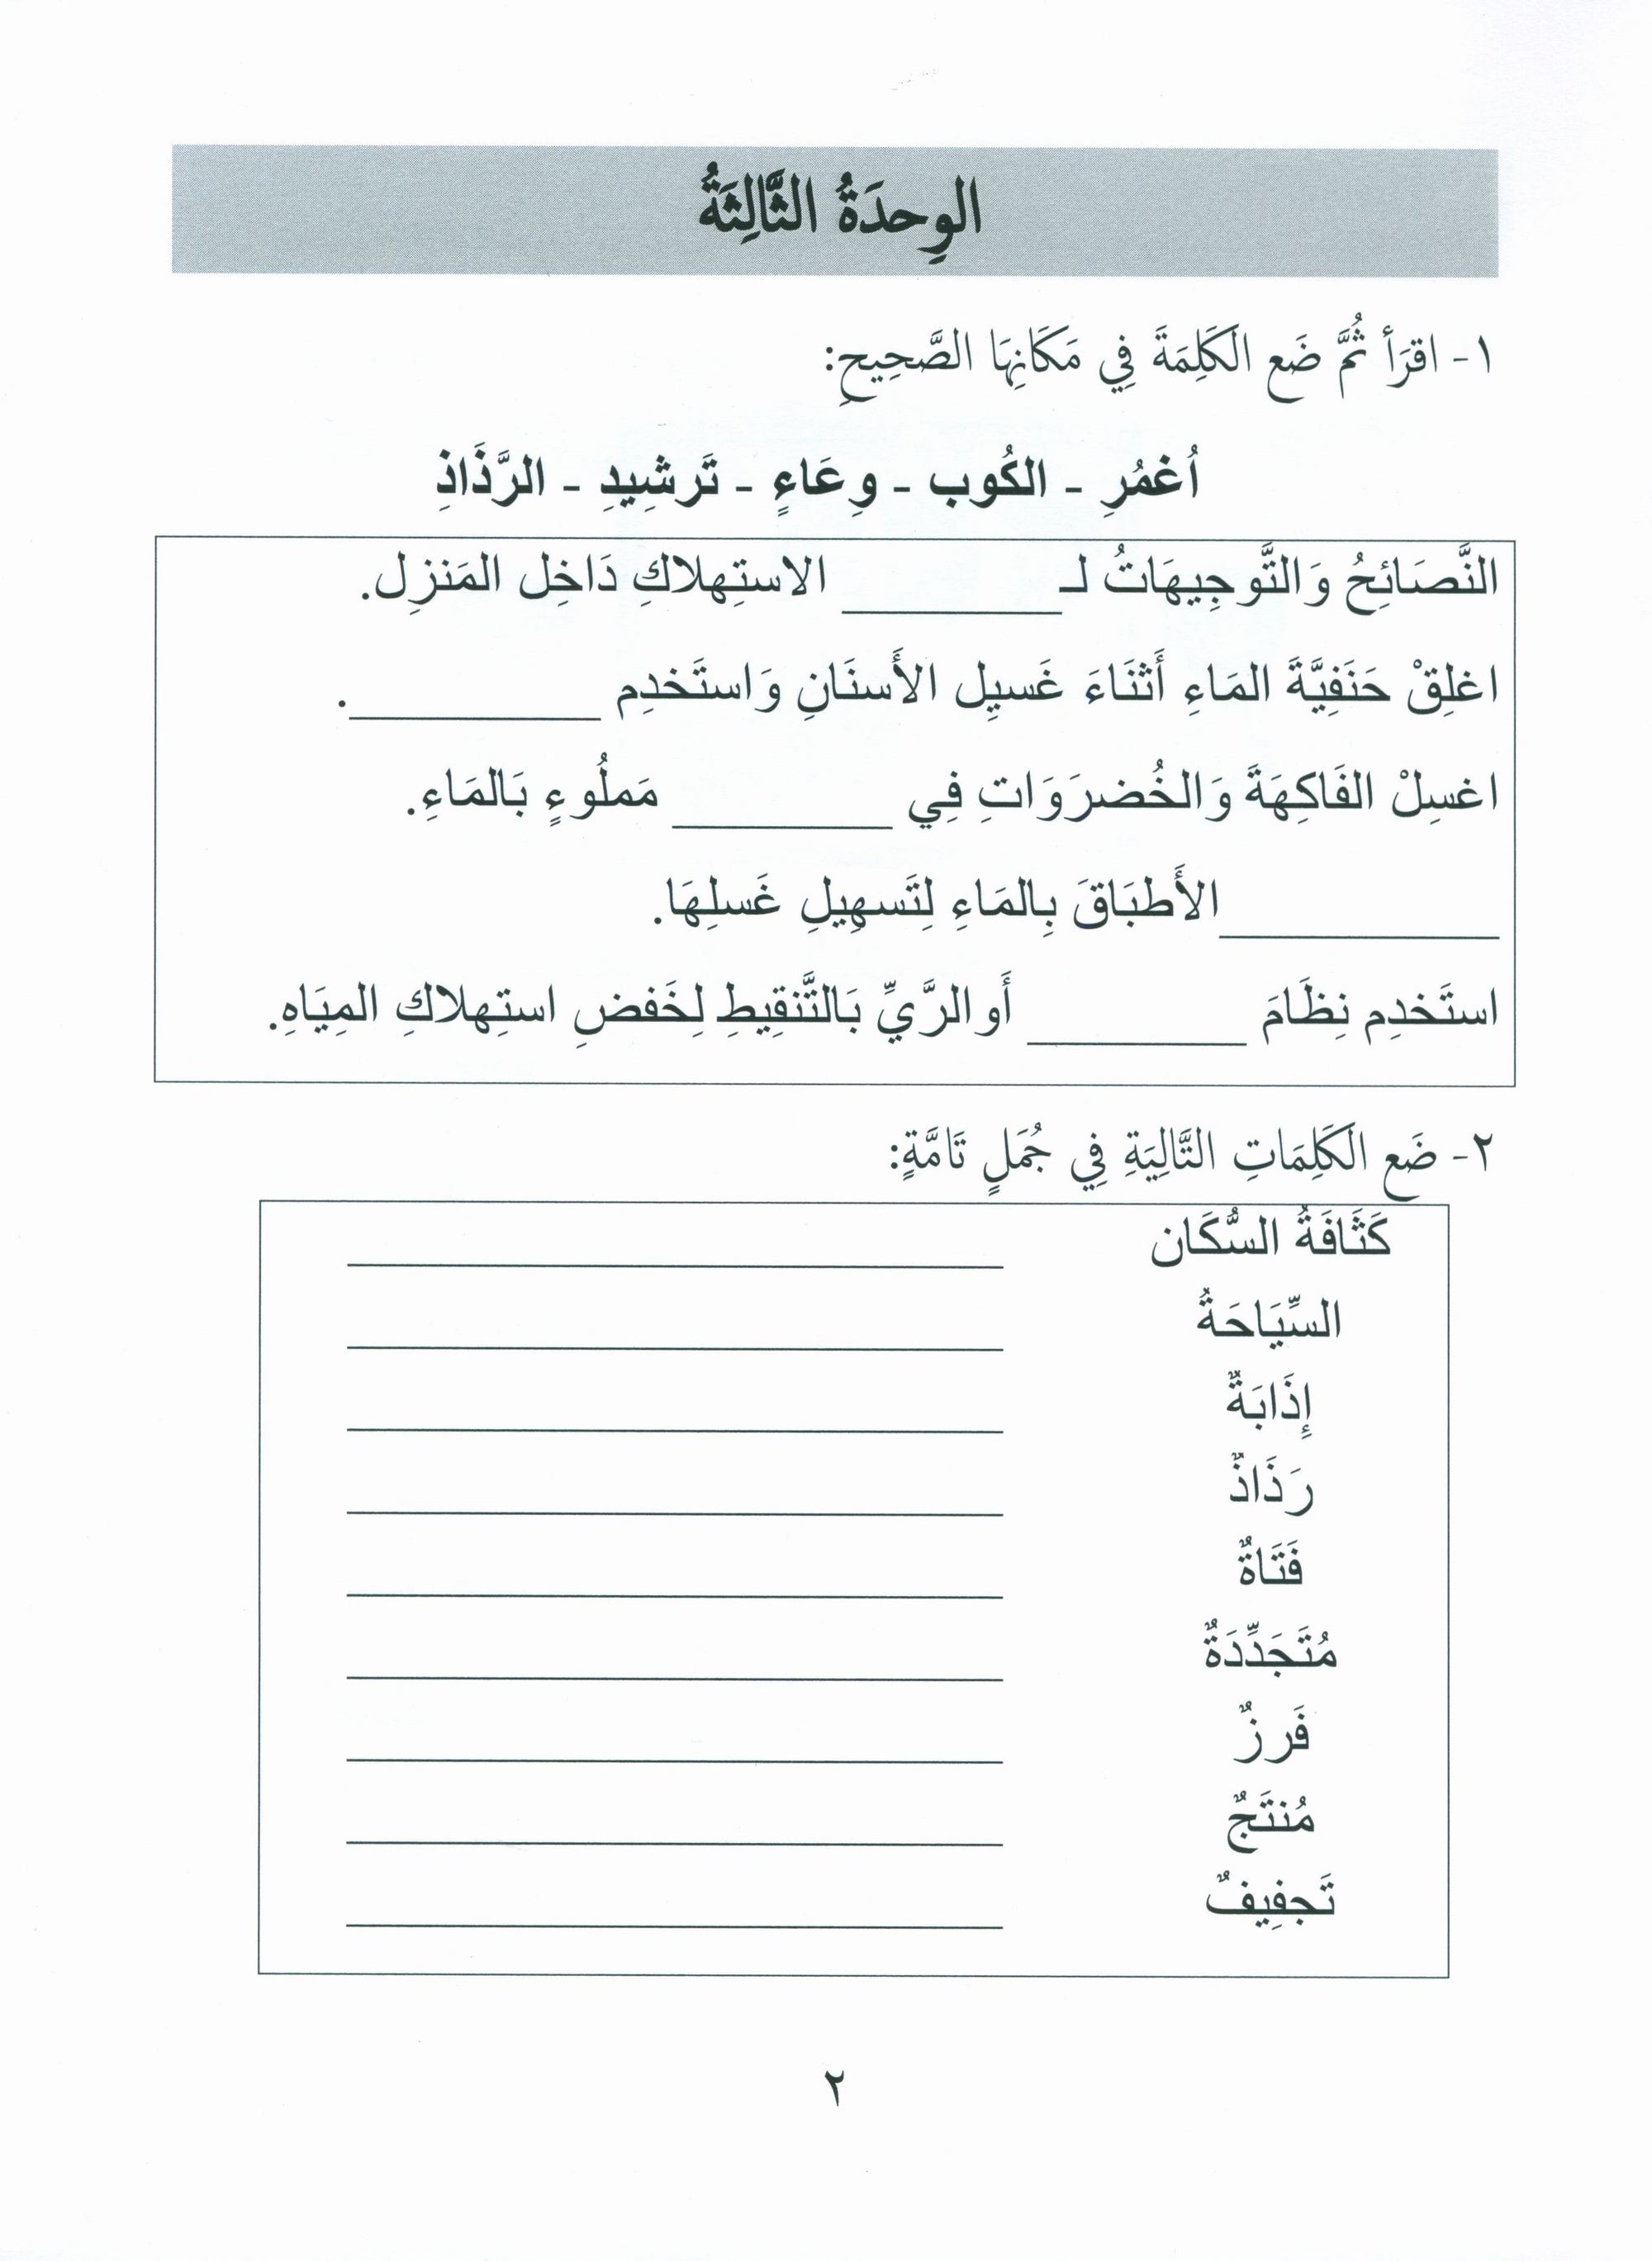 Gems of Arabic Assessment Level 4